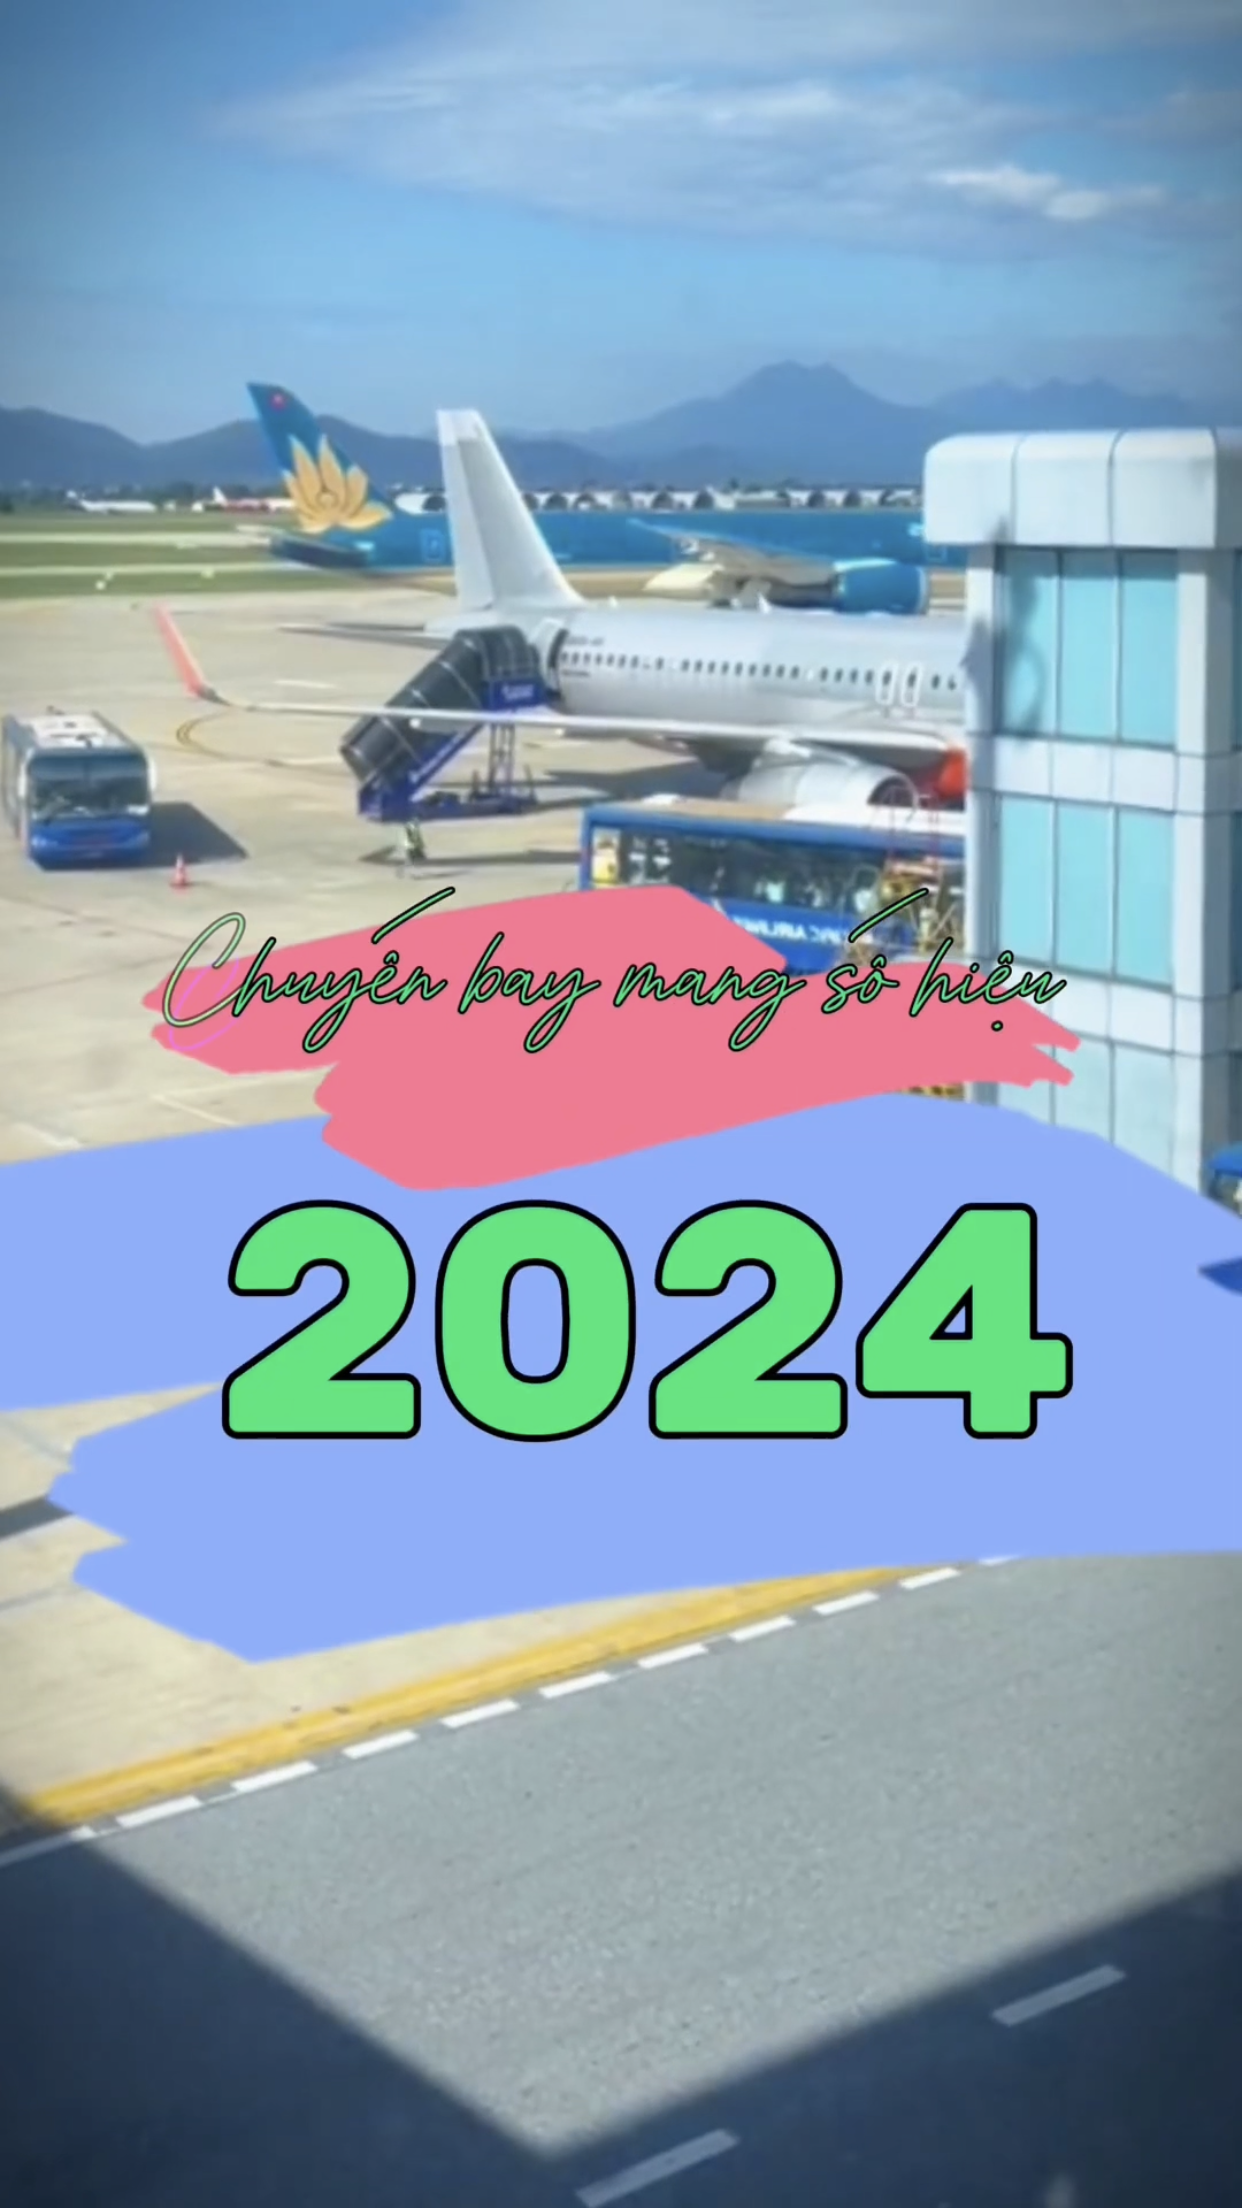 Chuyến bay mang số hiệu 2024 vui vẻ và hạnh phúc